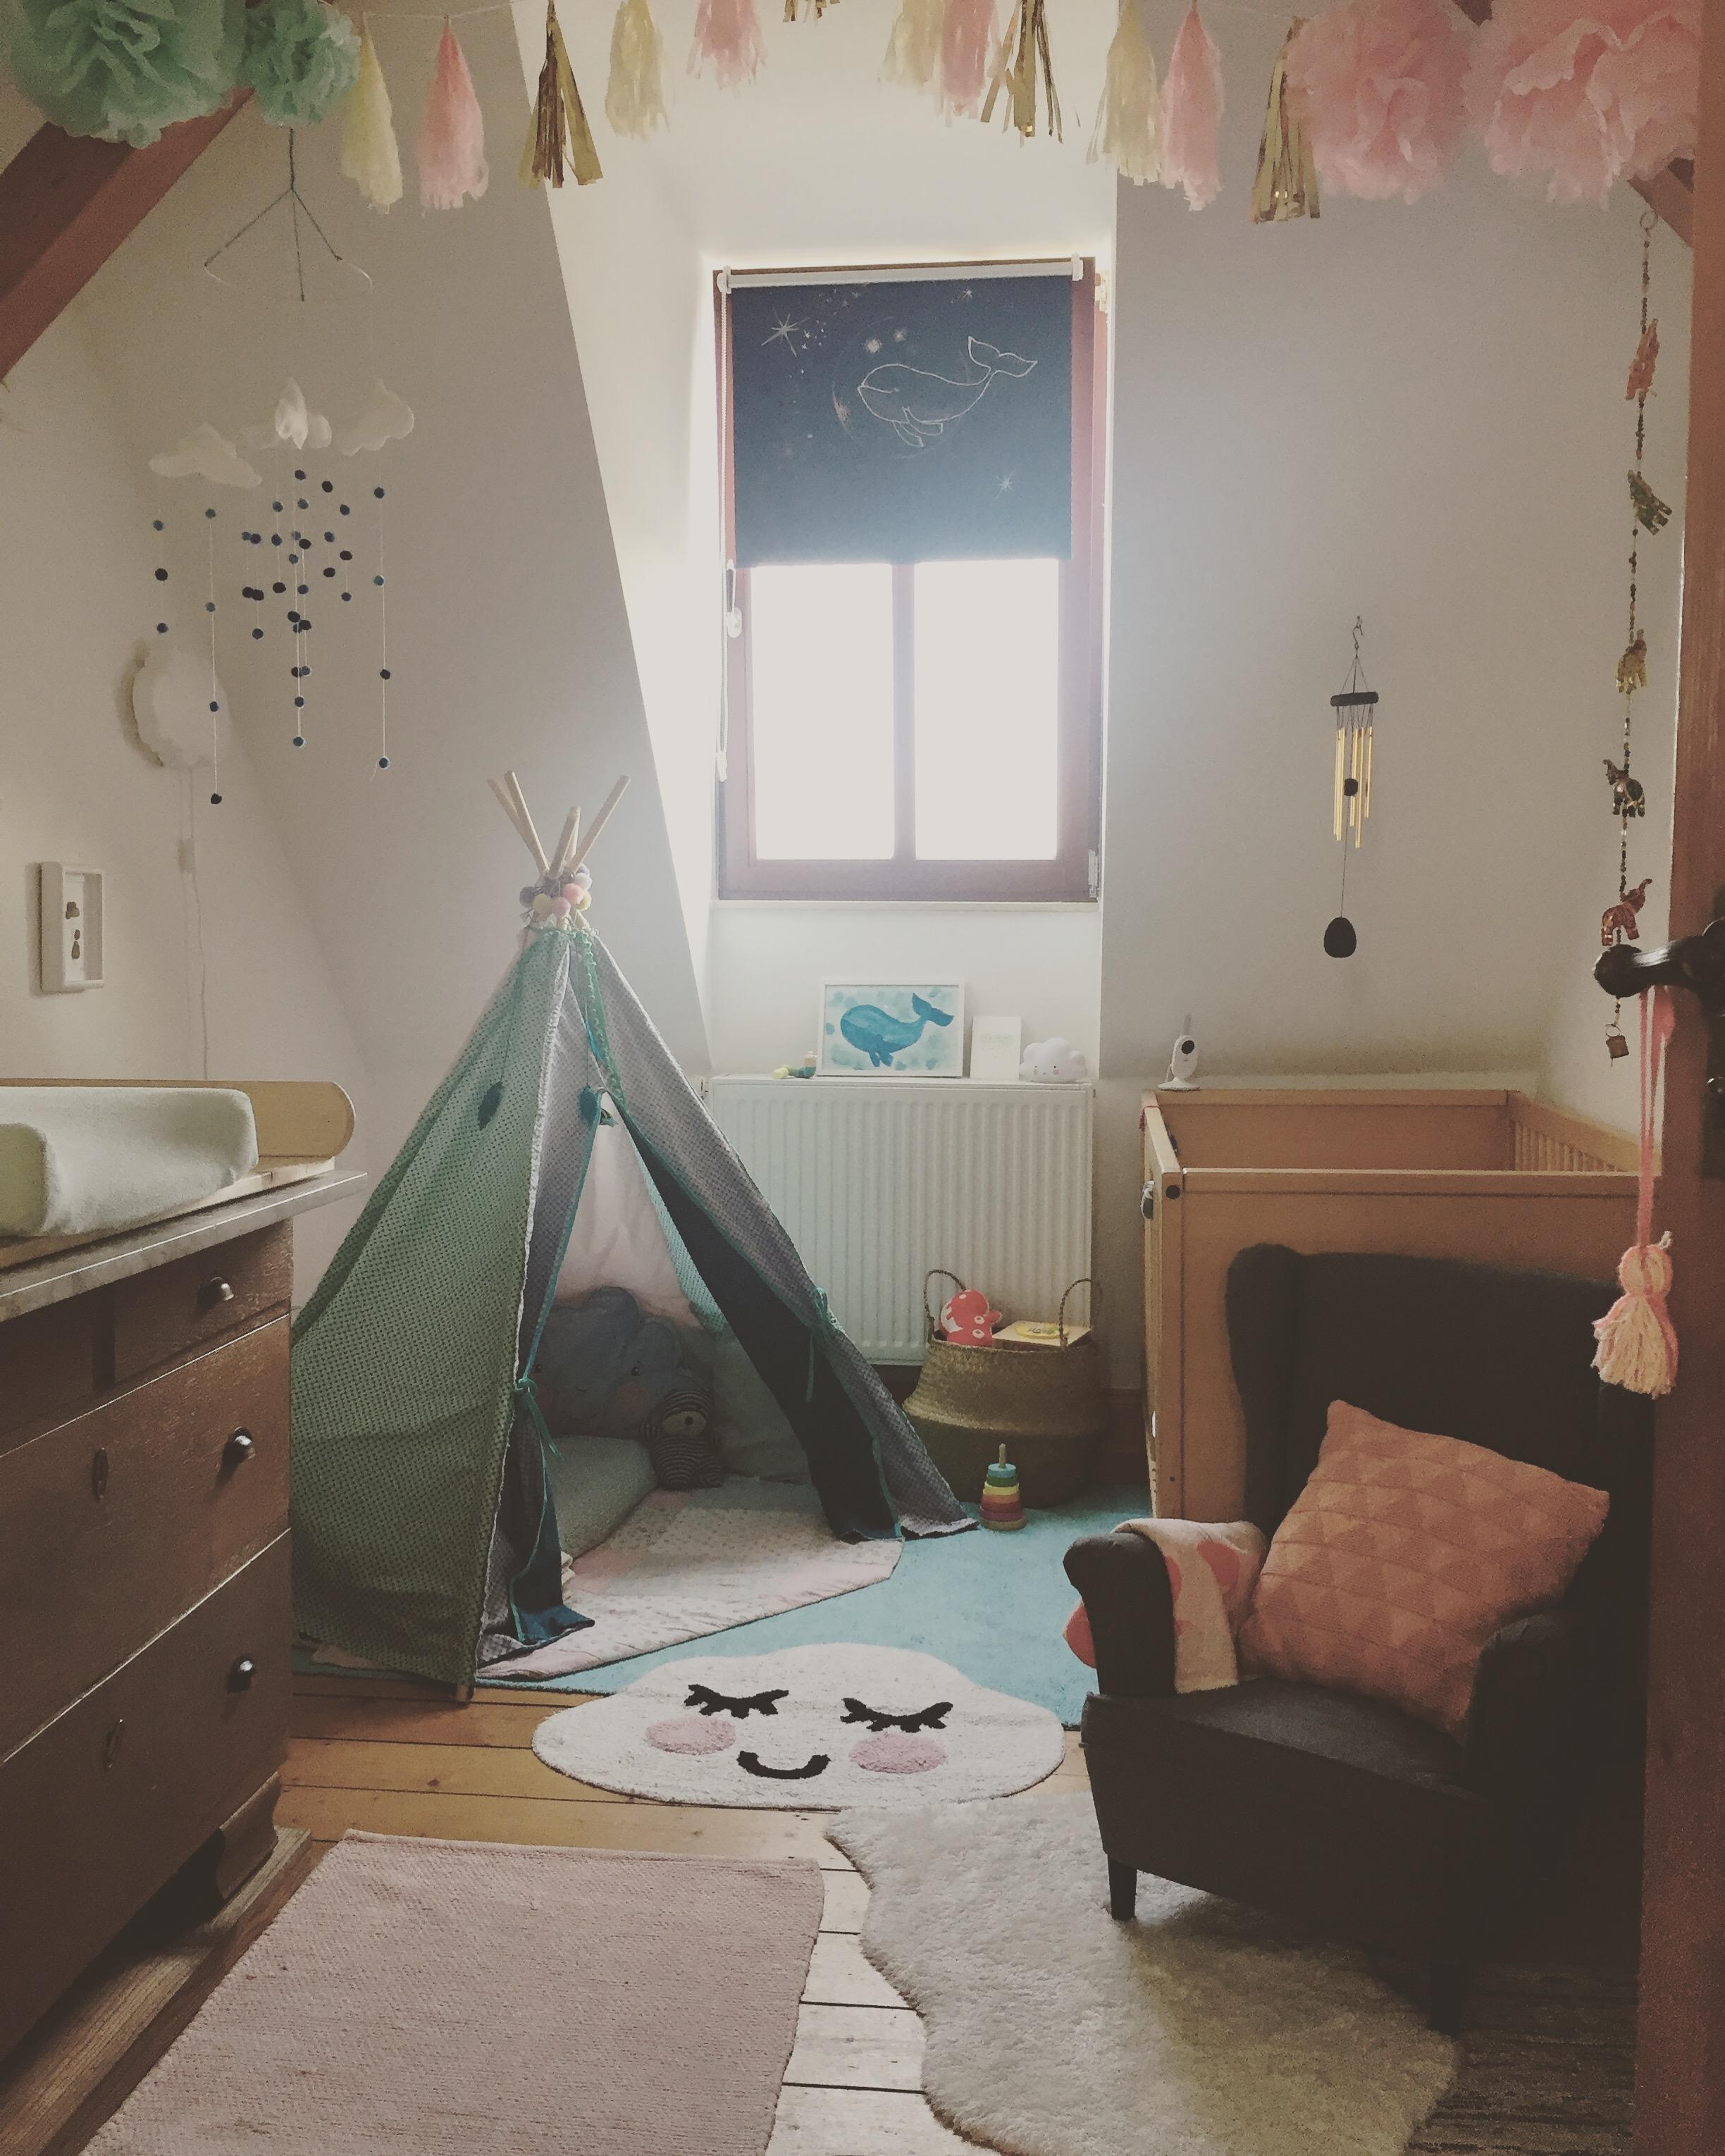 kleiner Raum, große Wirkung für unsere kleine, großartige Mitbewohnerin #Kinderzimmer #babyzimmer #cozyhome #mitmachen